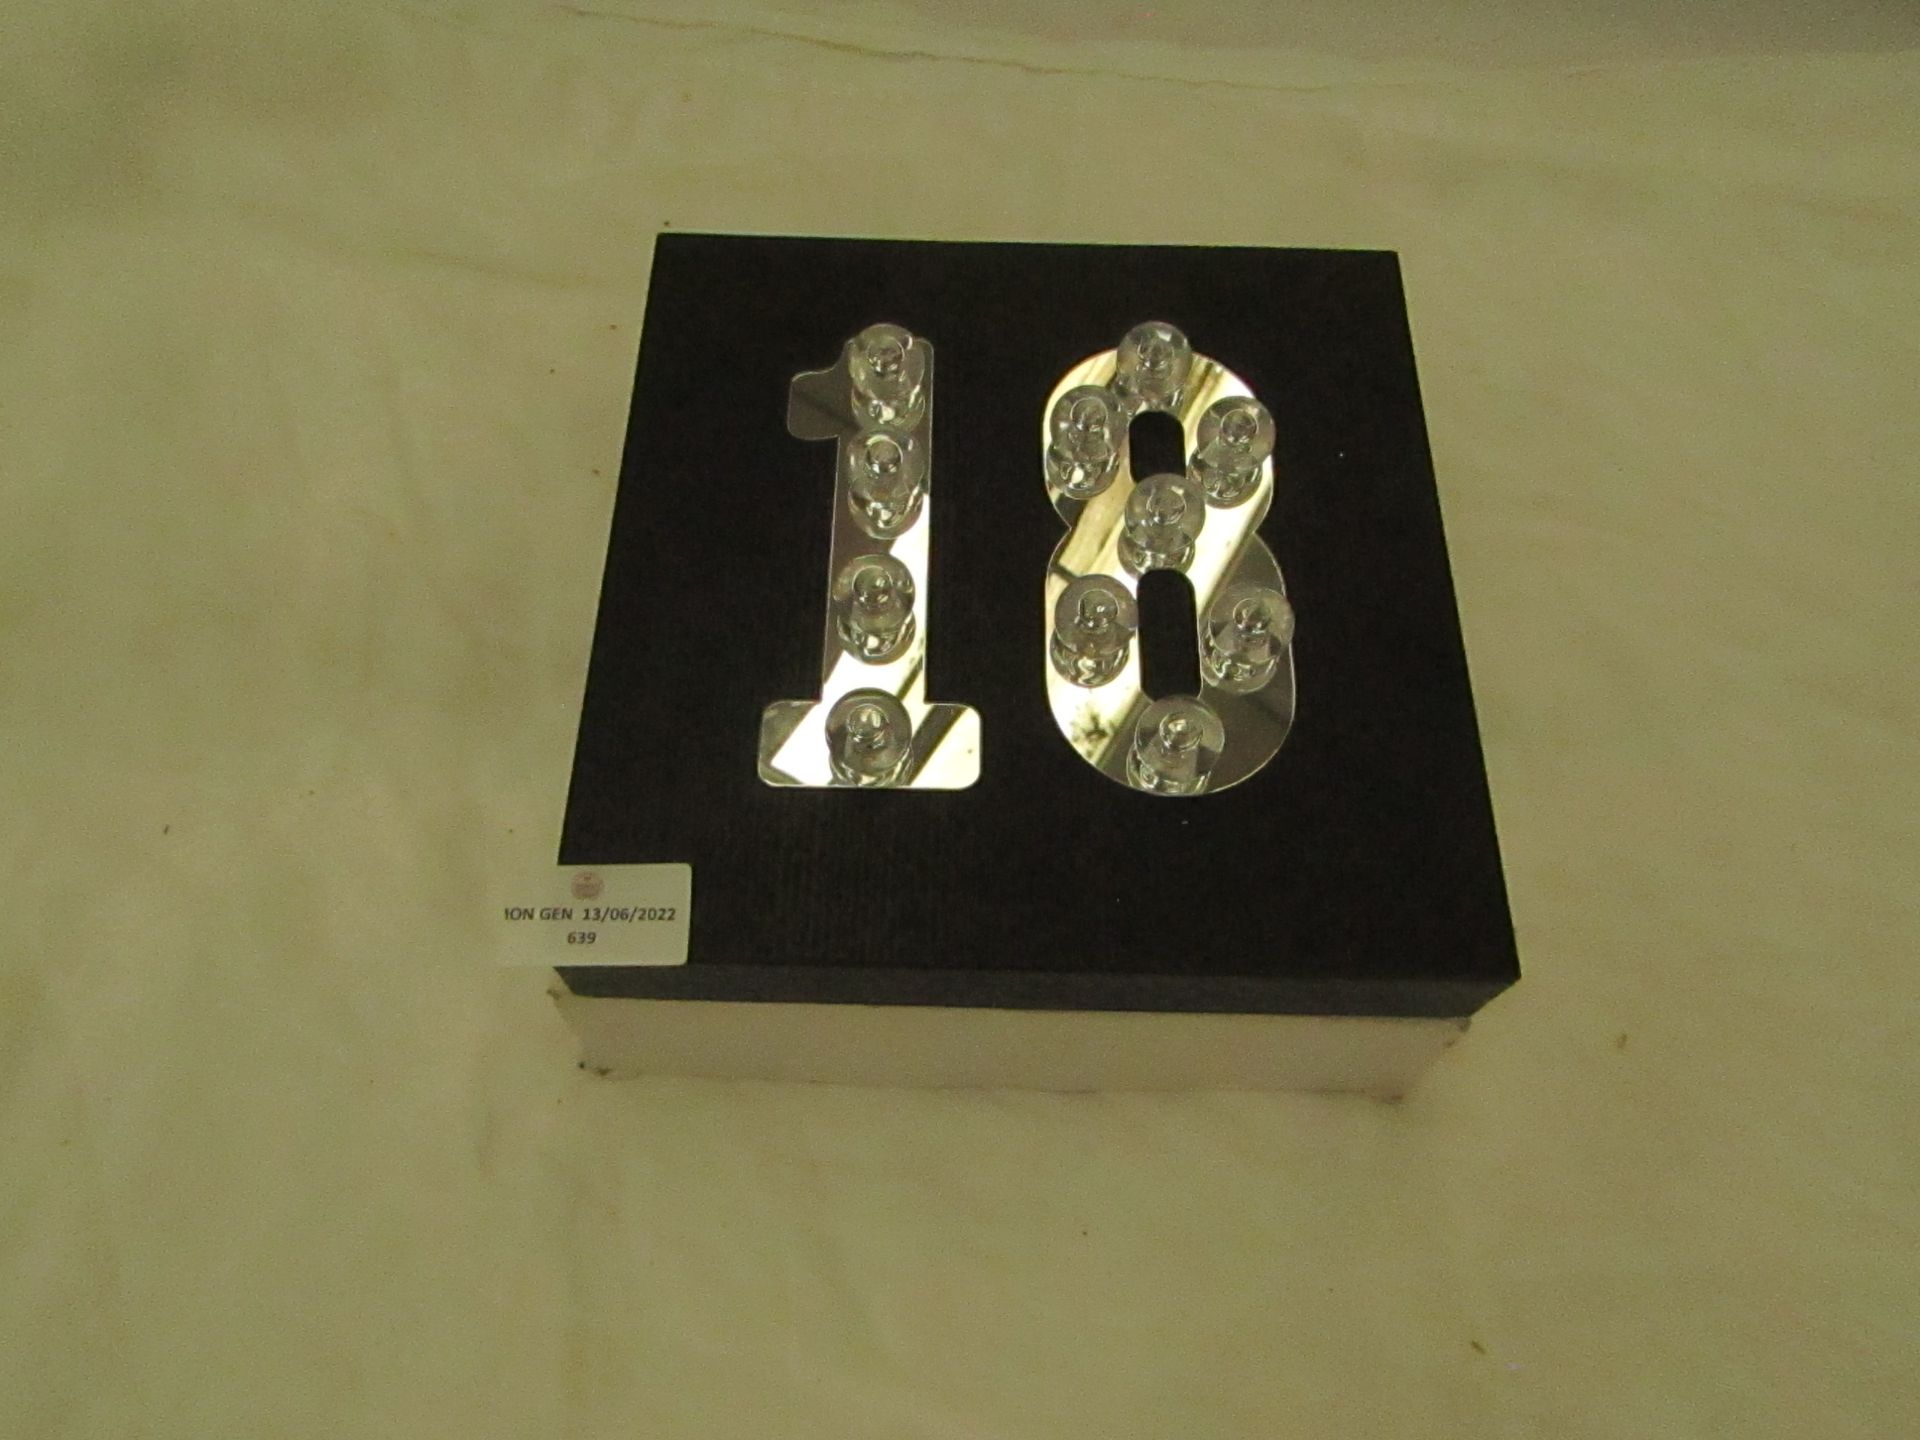 Black Light-Up Age Block " 18 " - Unused & Boxed.